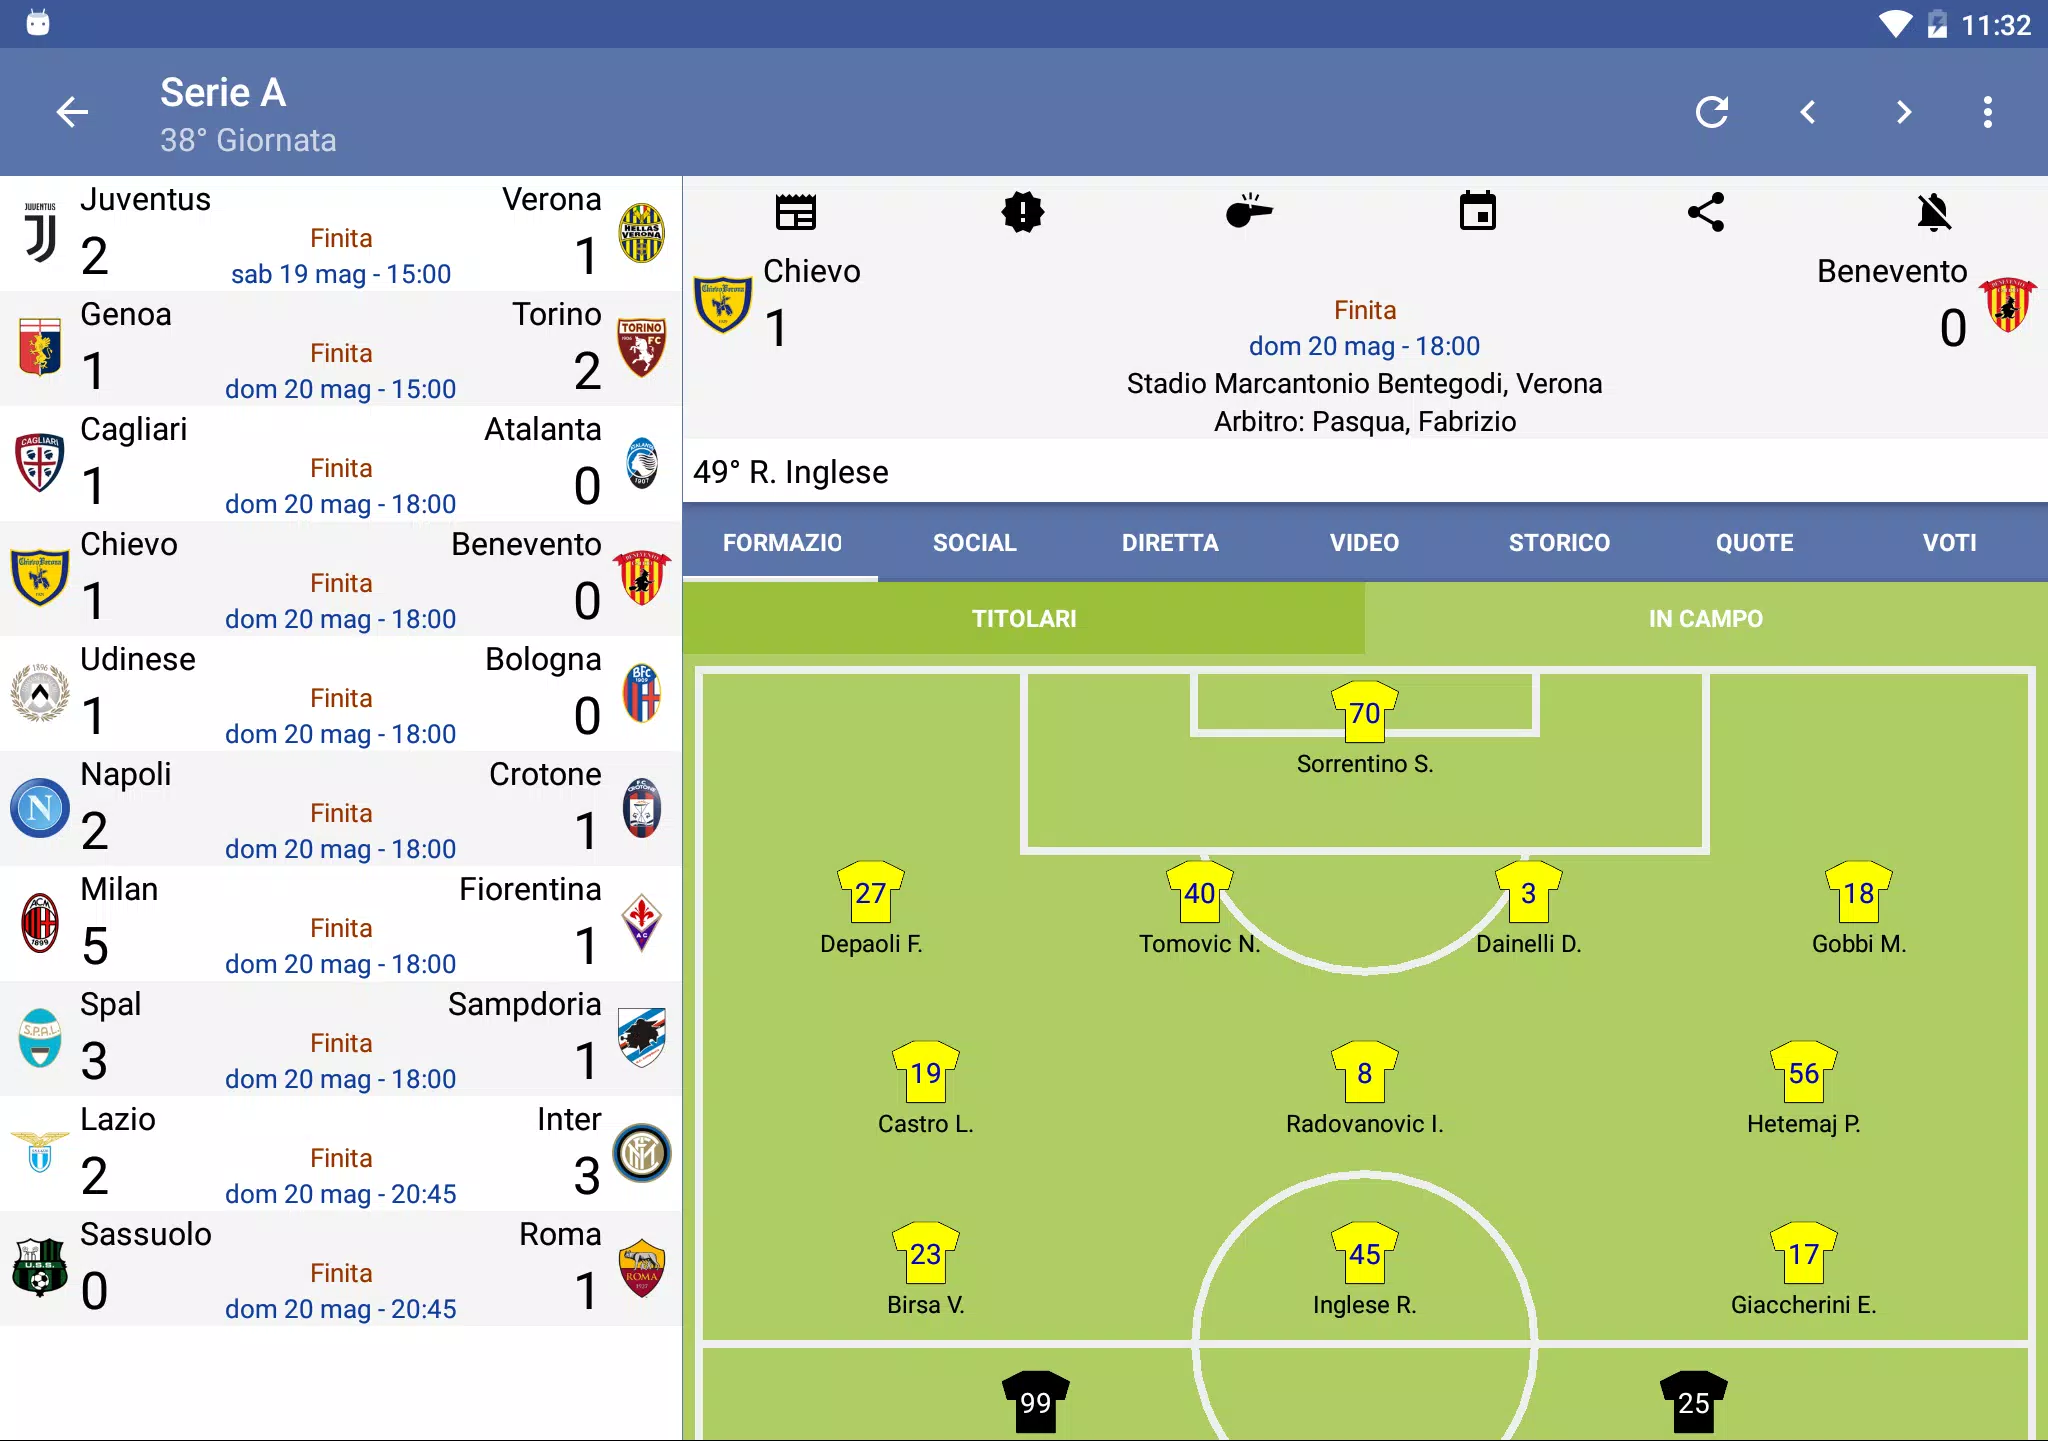 Tutto il Calcio for Android - APK Download